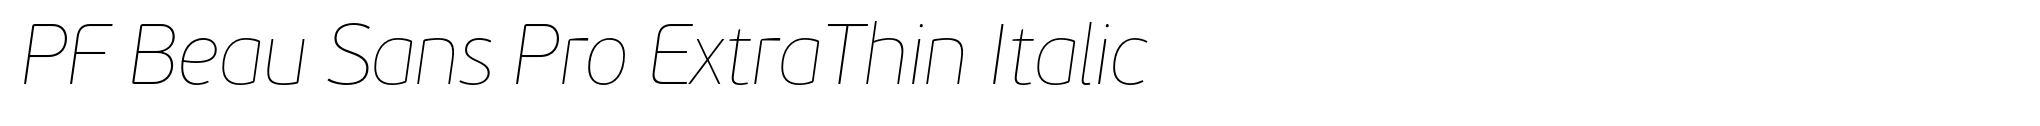 PF Beau Sans Pro ExtraThin Italic image